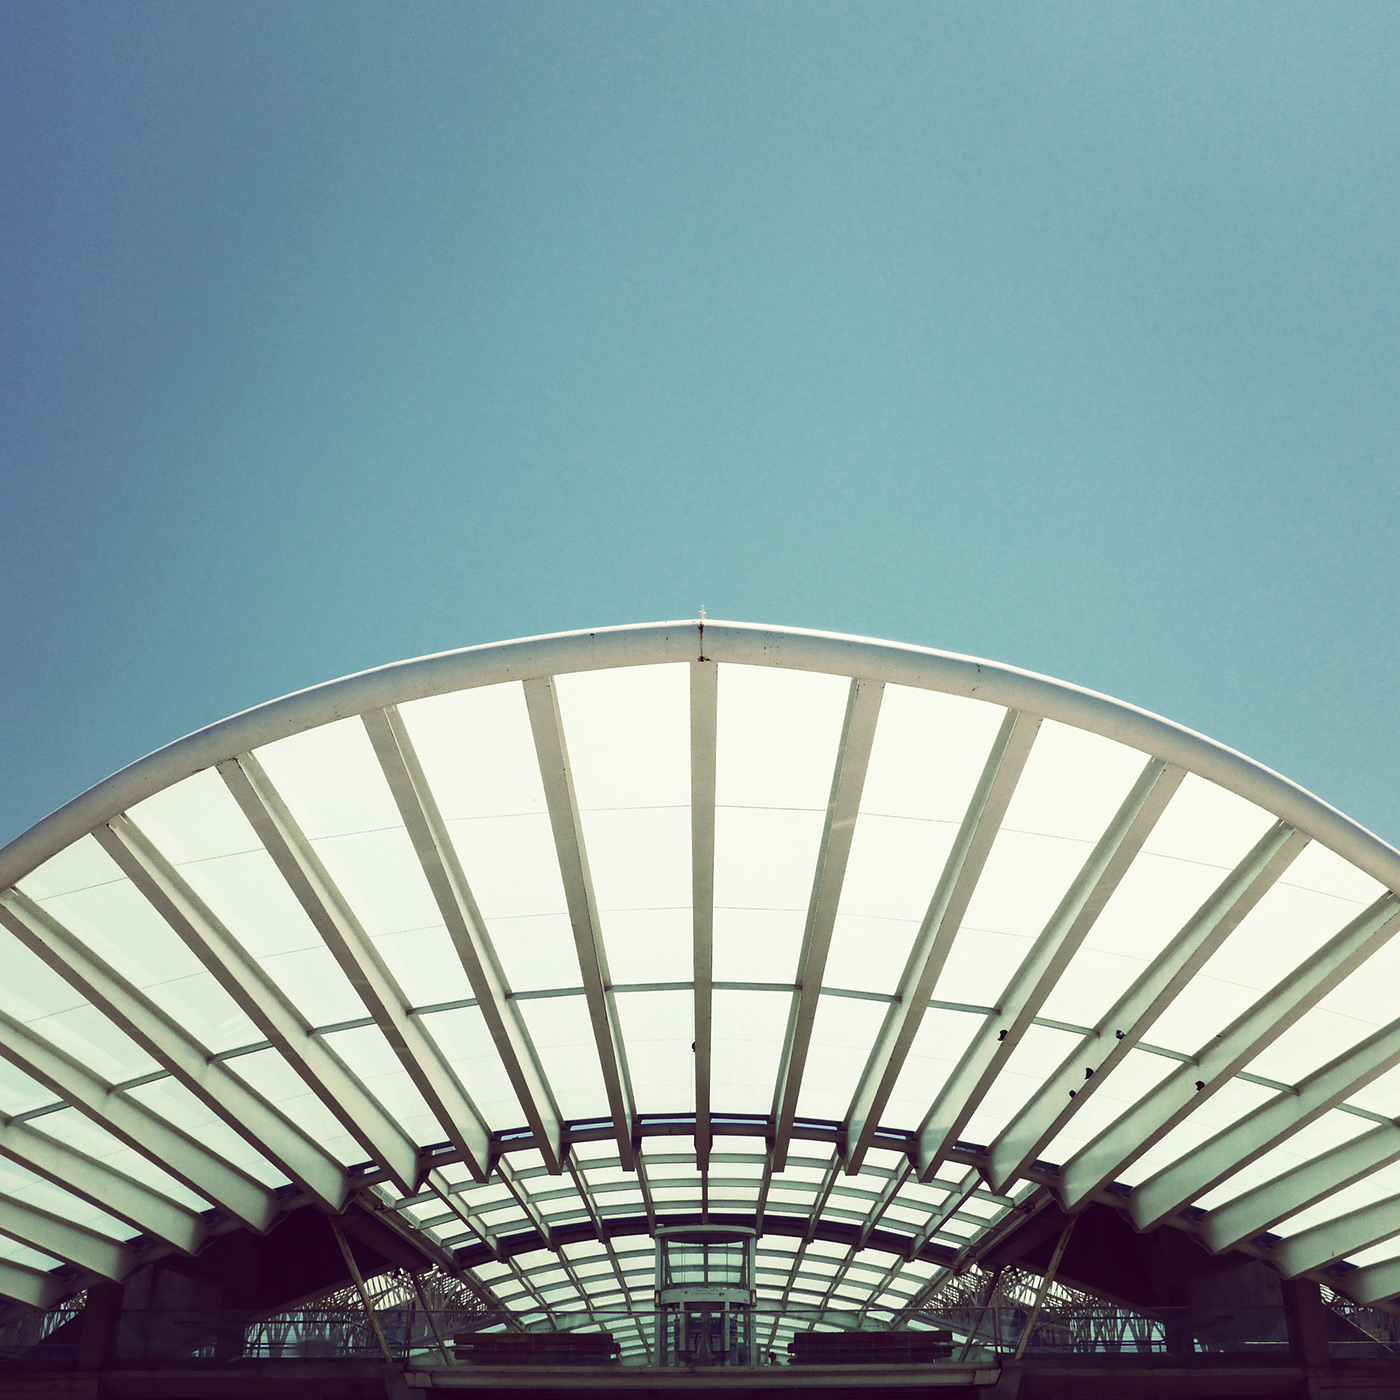 Estação do Oriente <br />Location: Lisbon, Portugal <br />Architect: Santiago Calatrava